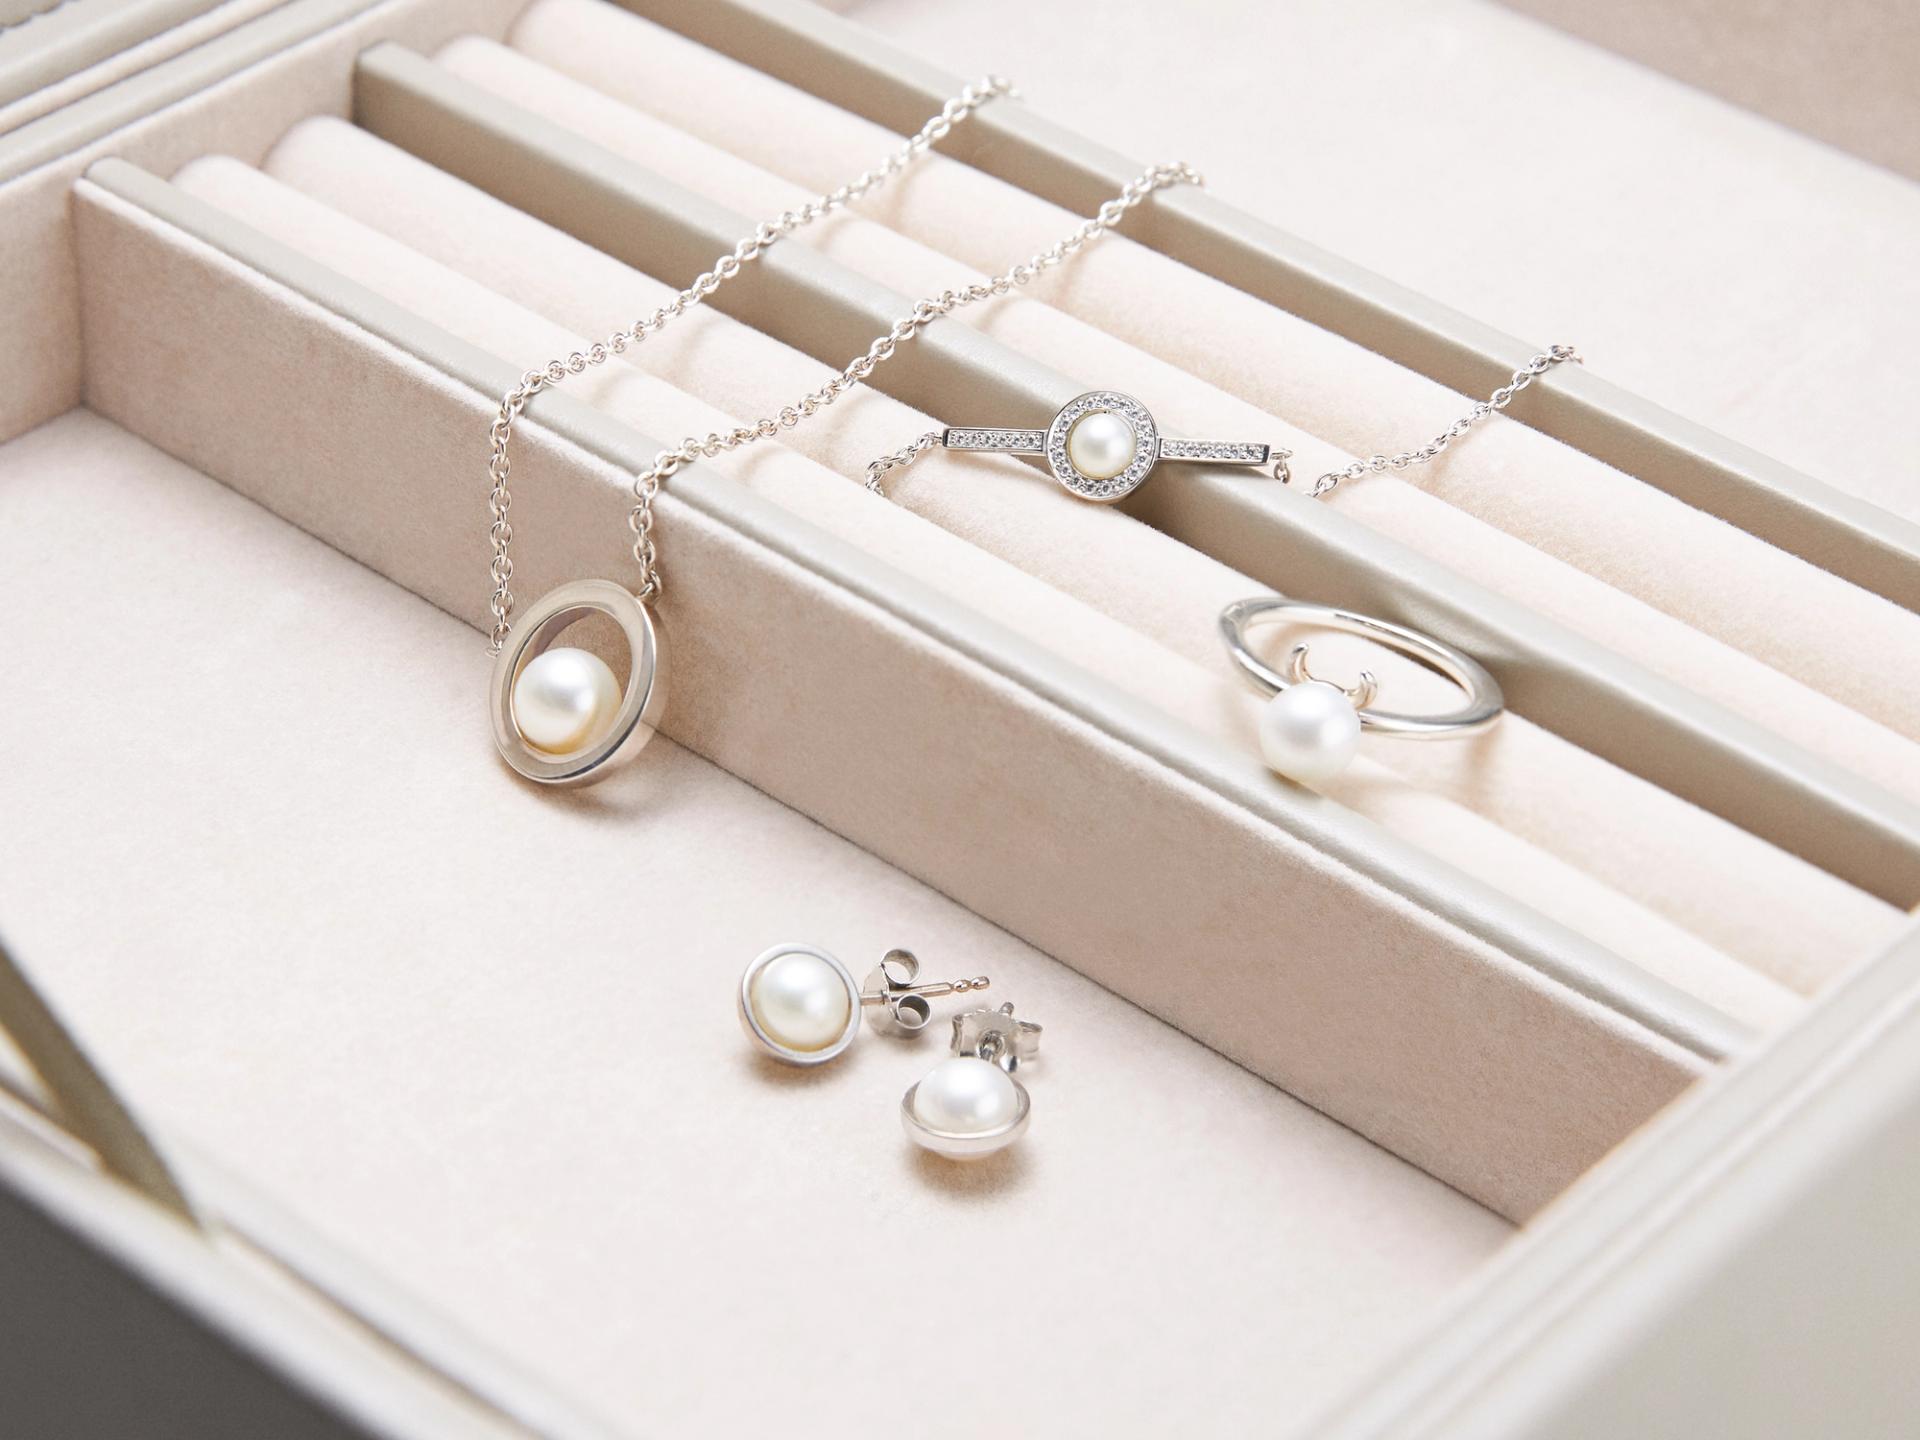 Pearls, pearls, pearls